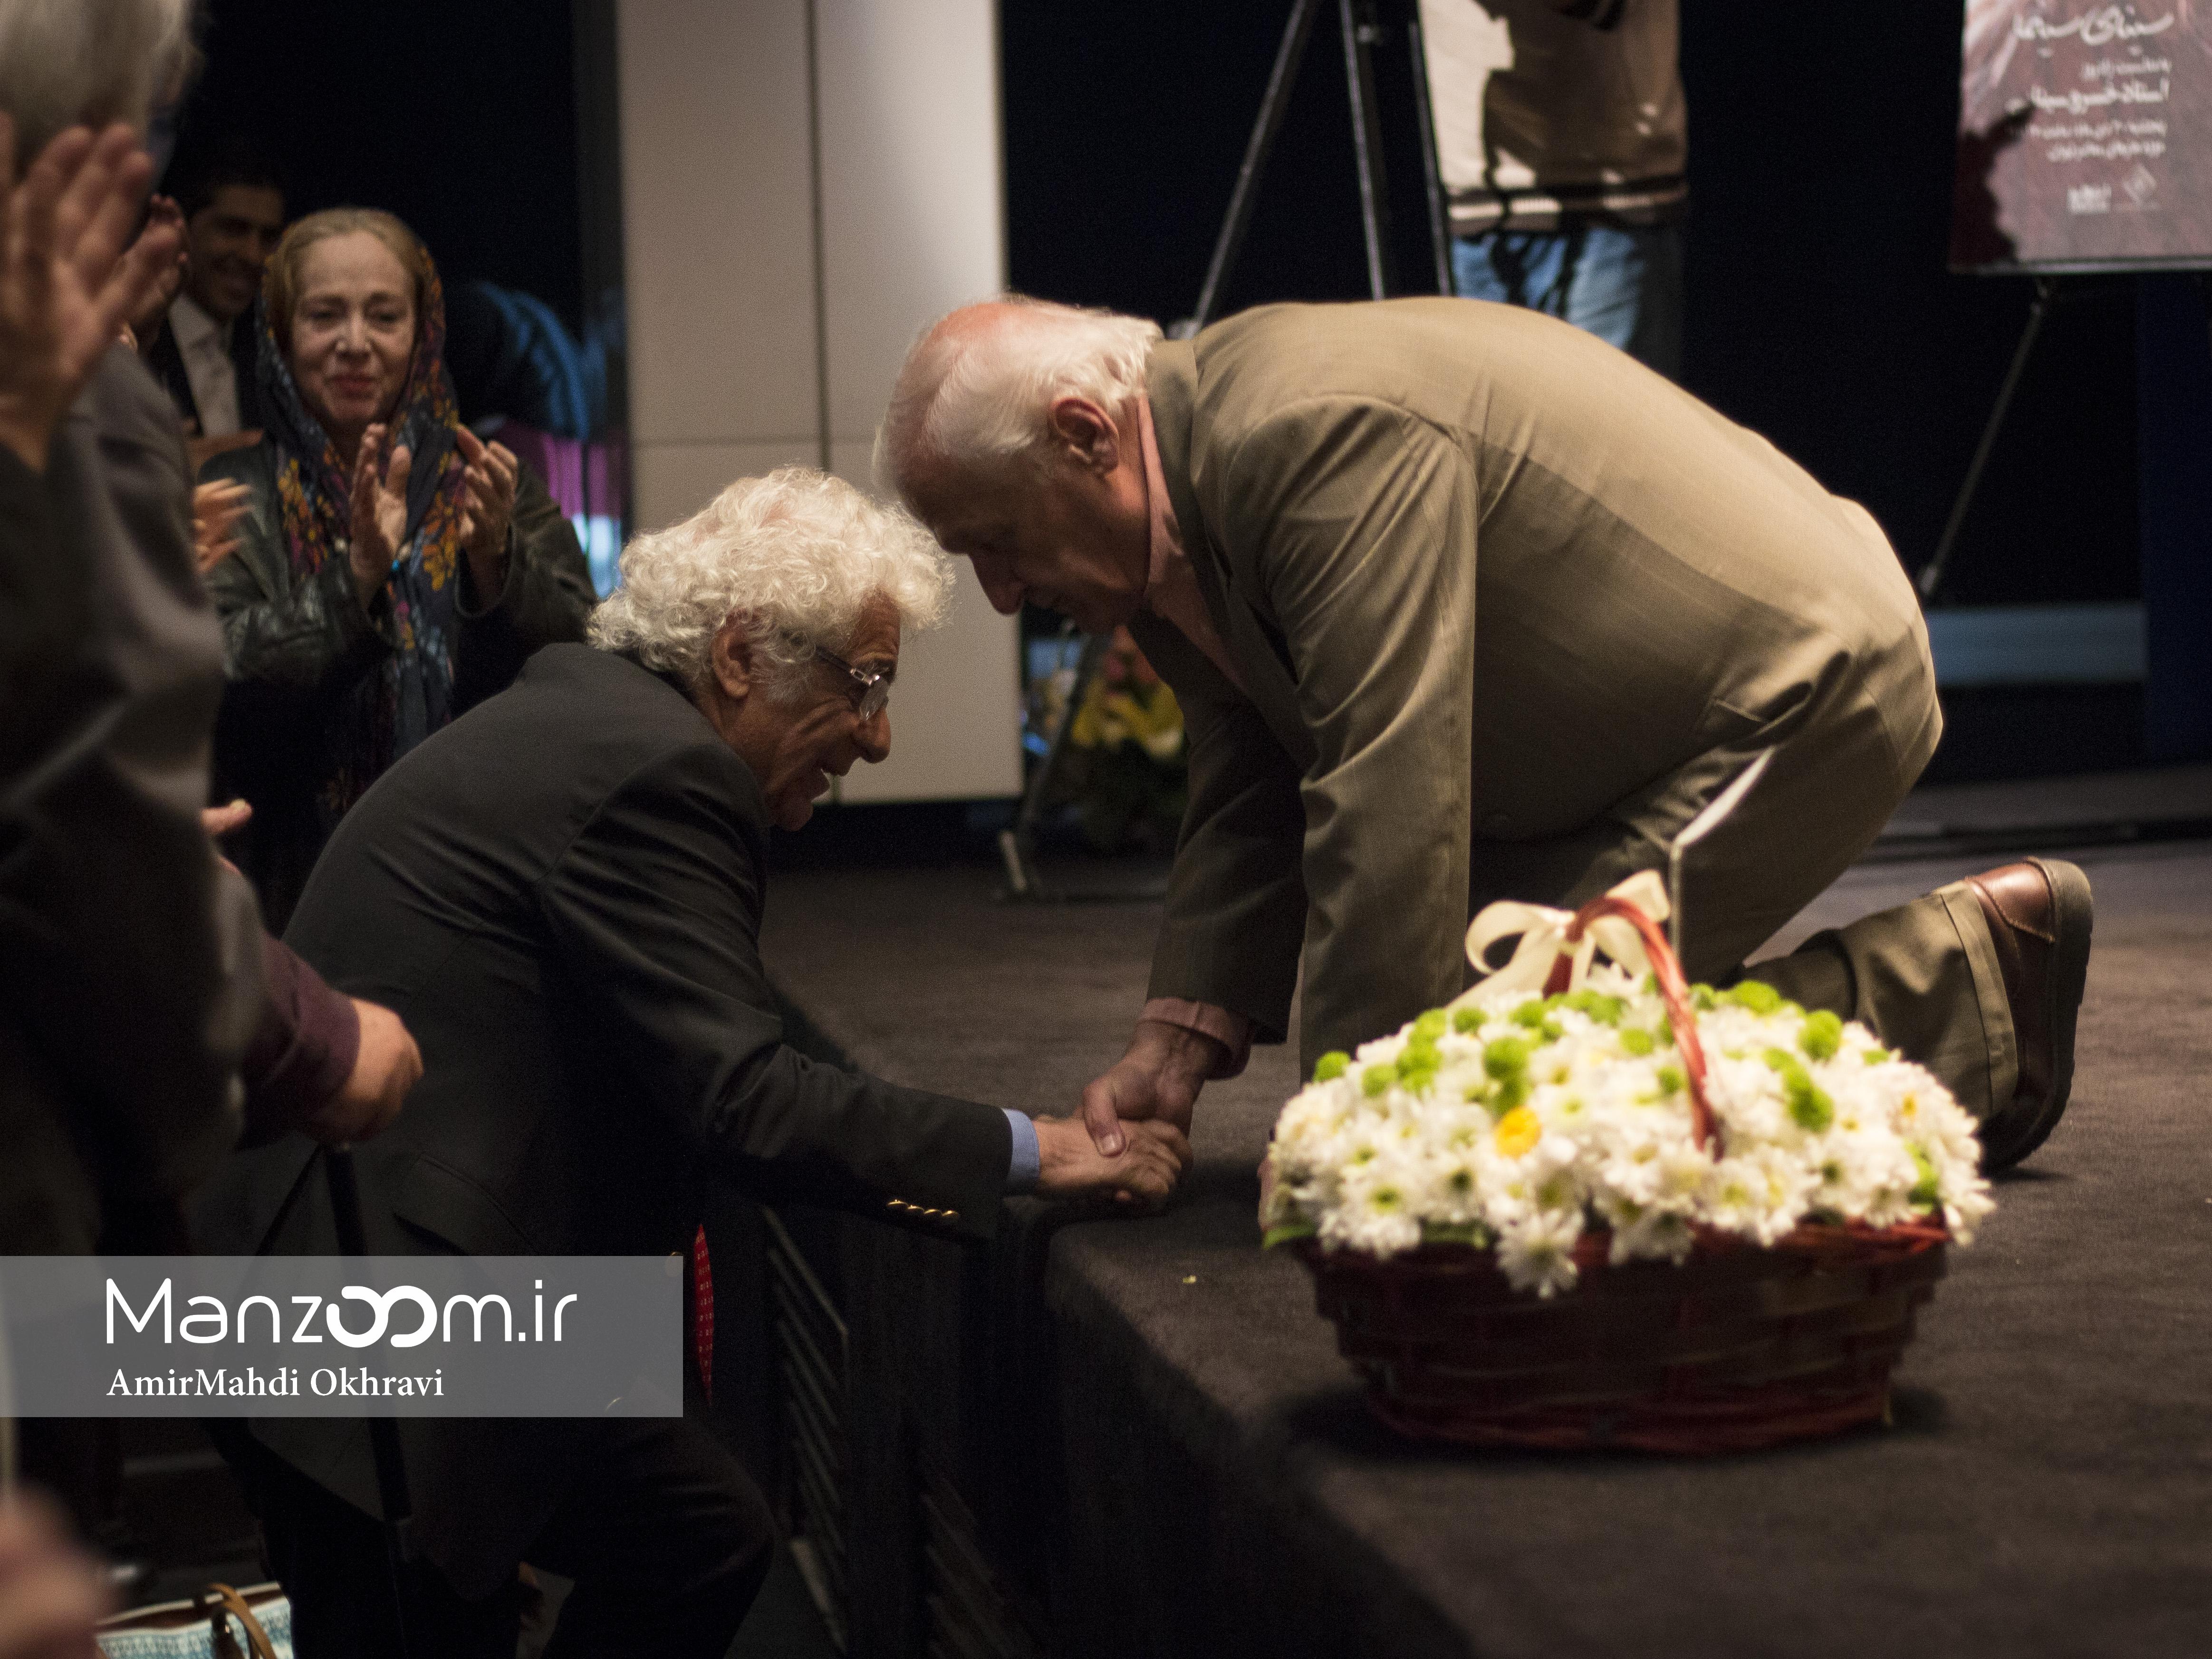 مراسم بزرگداشت و تولد 77 سالگی خسرو سینایی برگزار شد / تصاویر